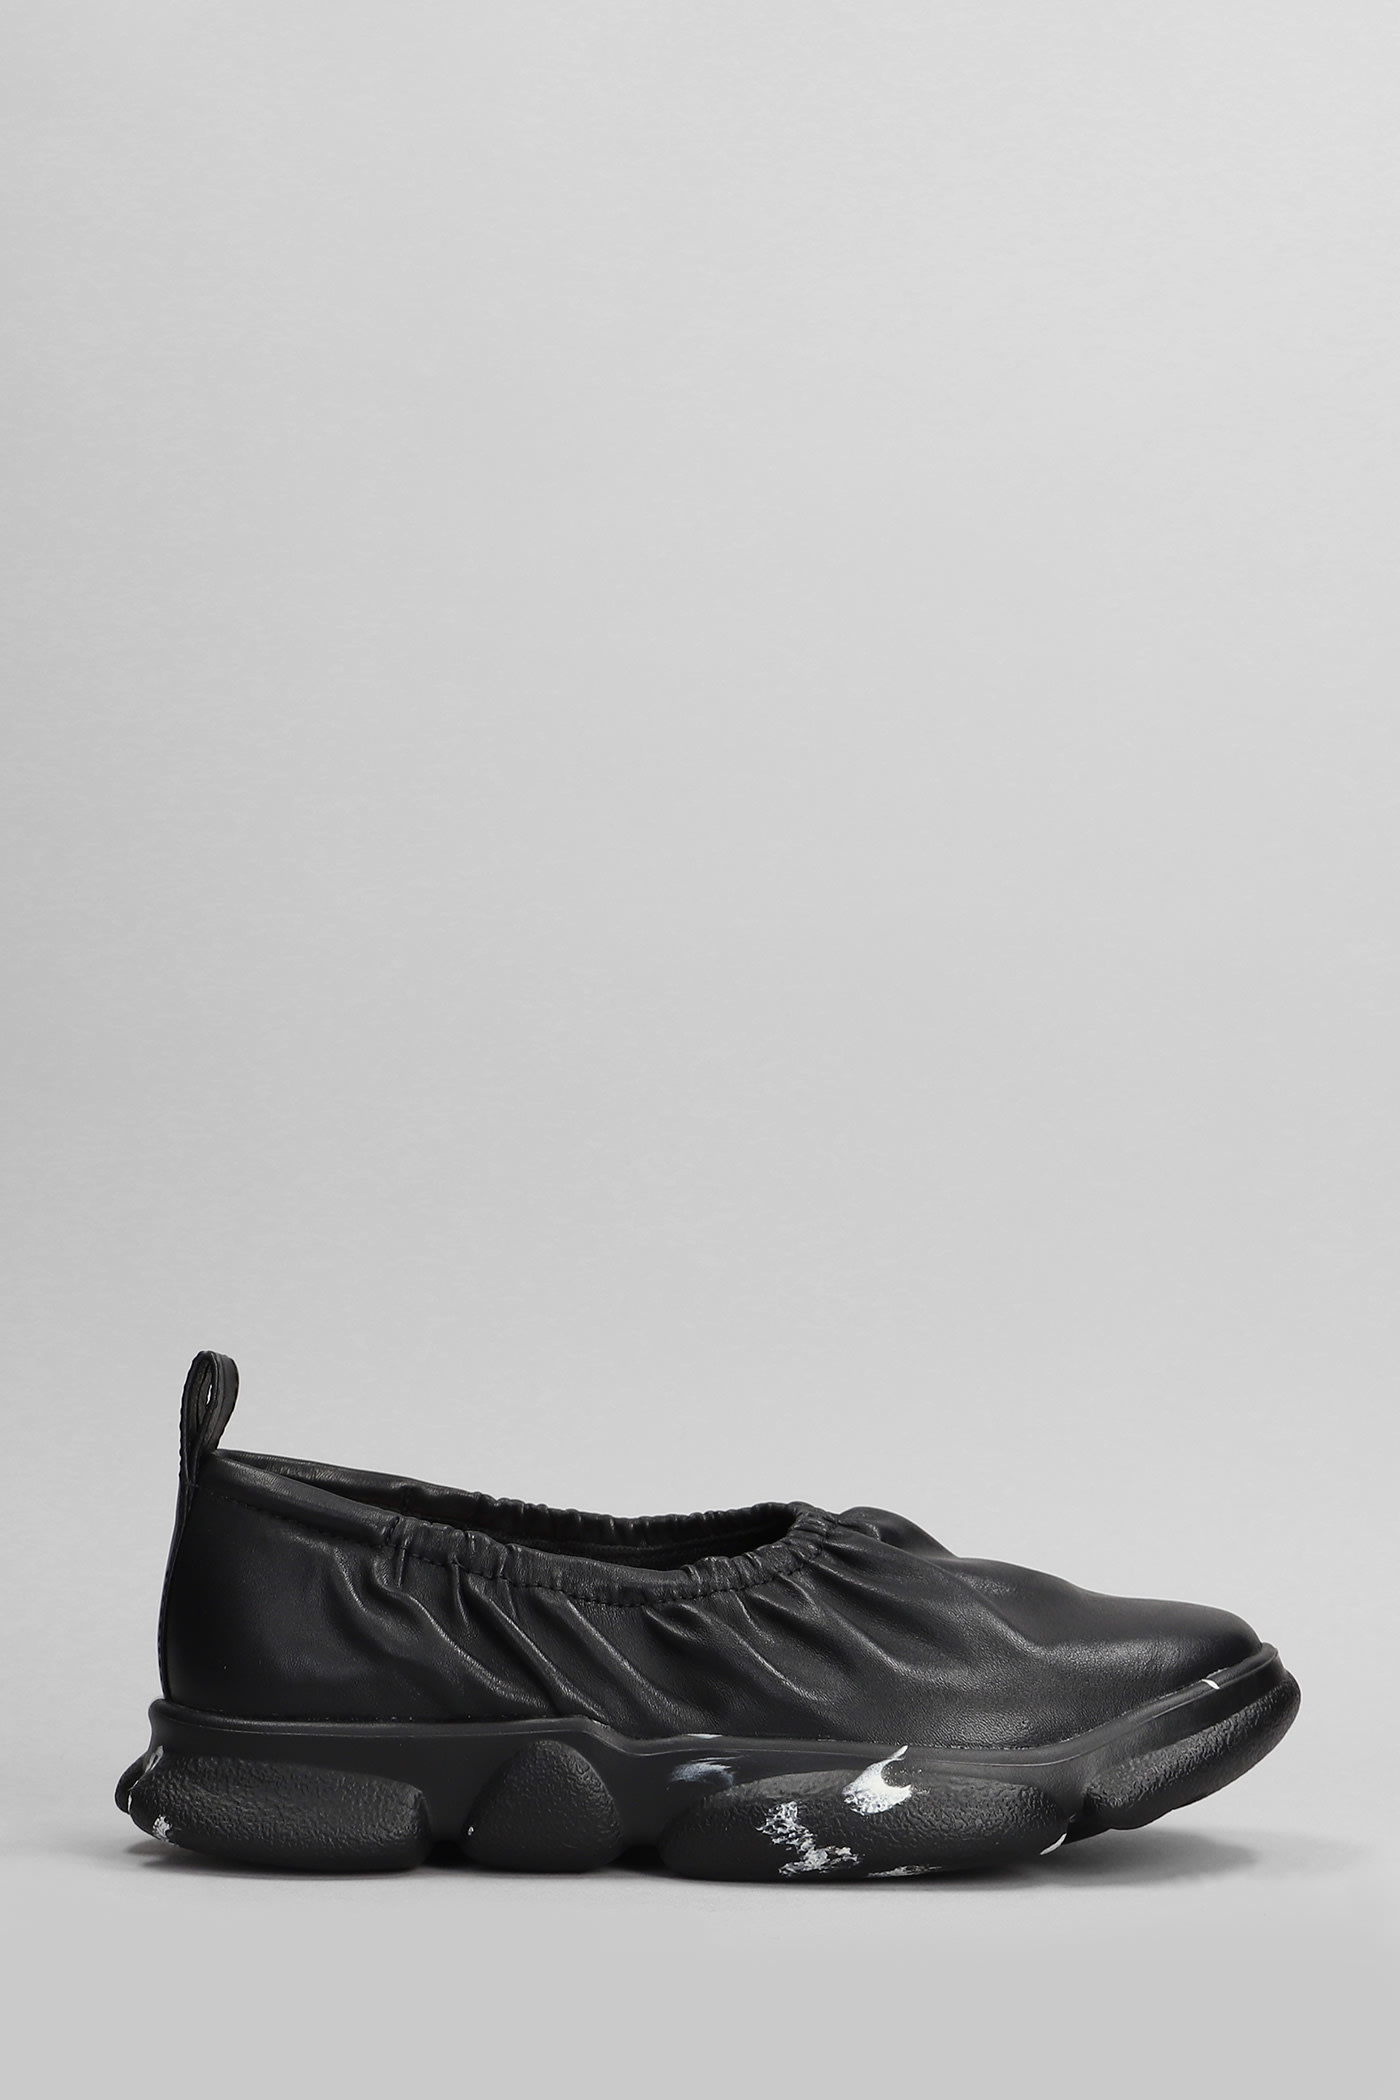 Karst Sneakers In Black Leather